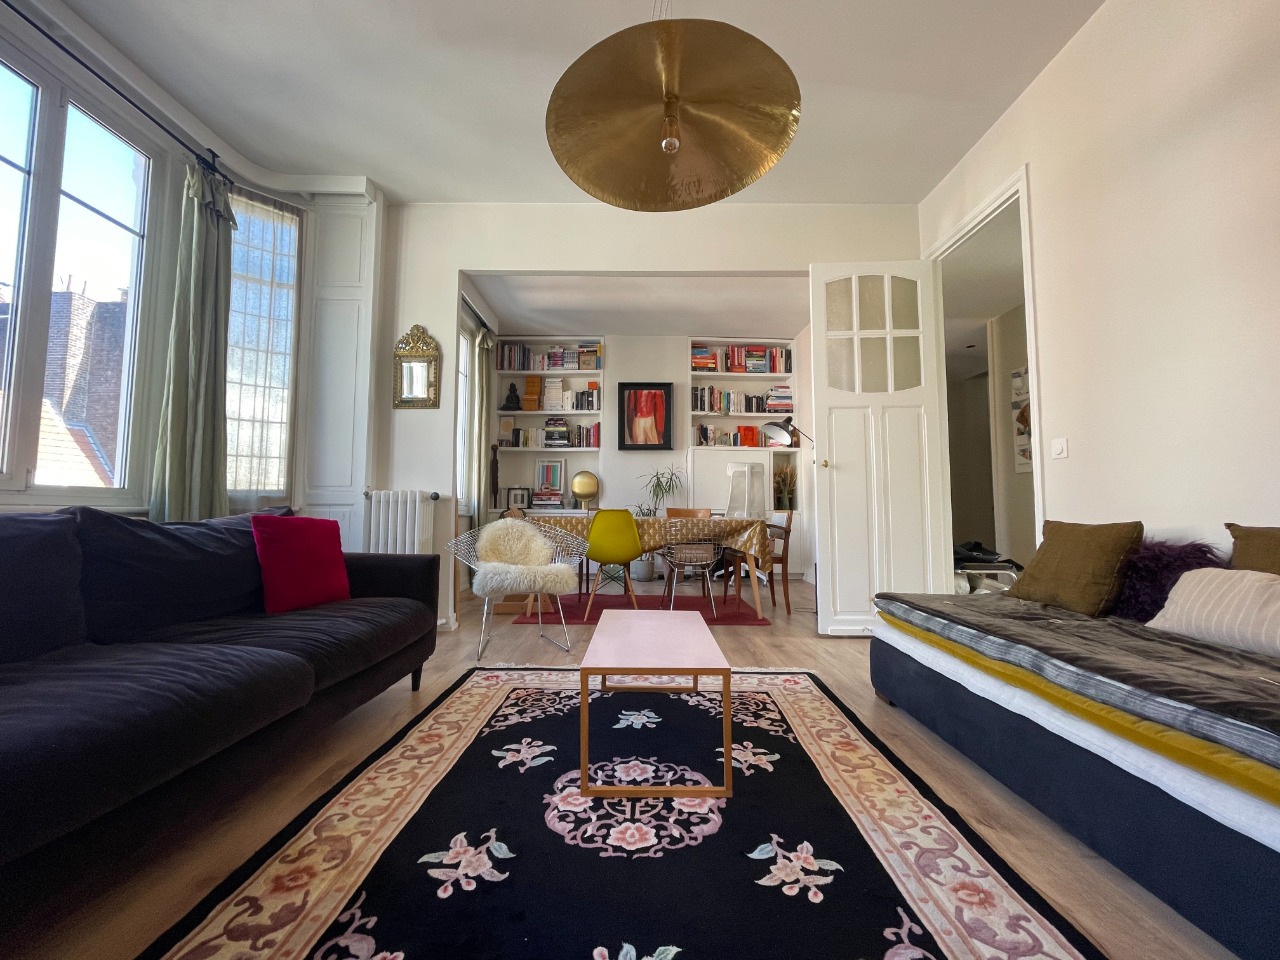 Appartement 3 pieces 80m2 proximite rihour Photo 1 - Paris Lille Immobilier